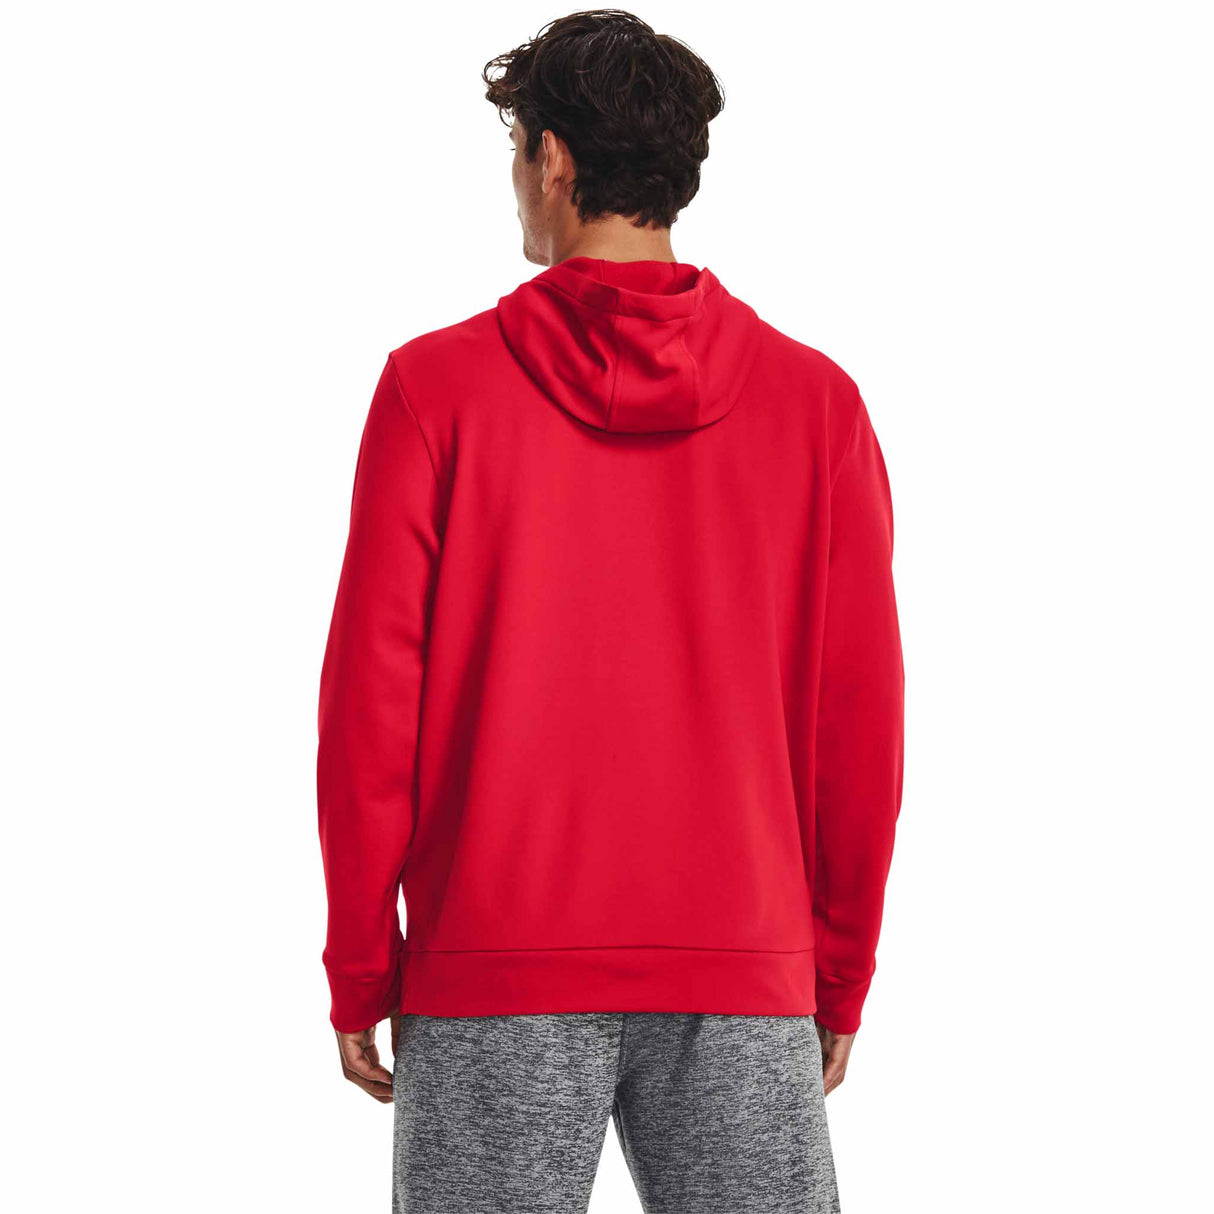 UA Armour Fleece Hoodie sweatshirt à capuchon pour homme - Red / Black